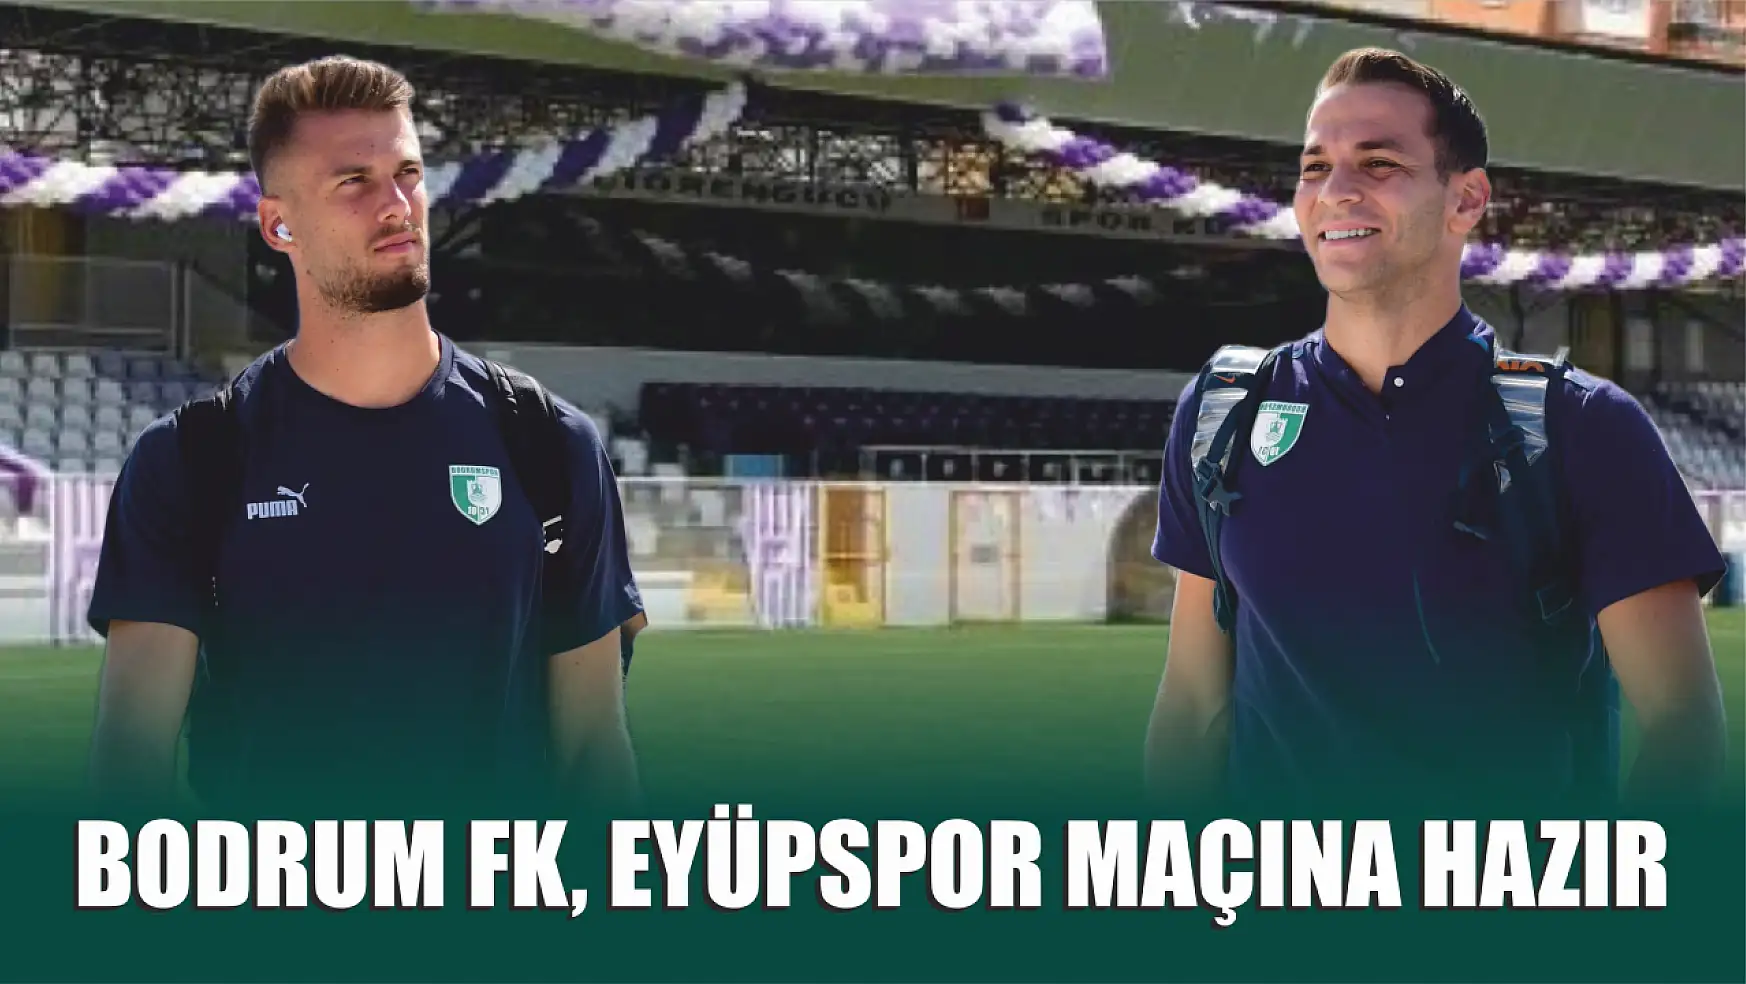 Bodrum FK, Eyüpspor Maçına Hazır